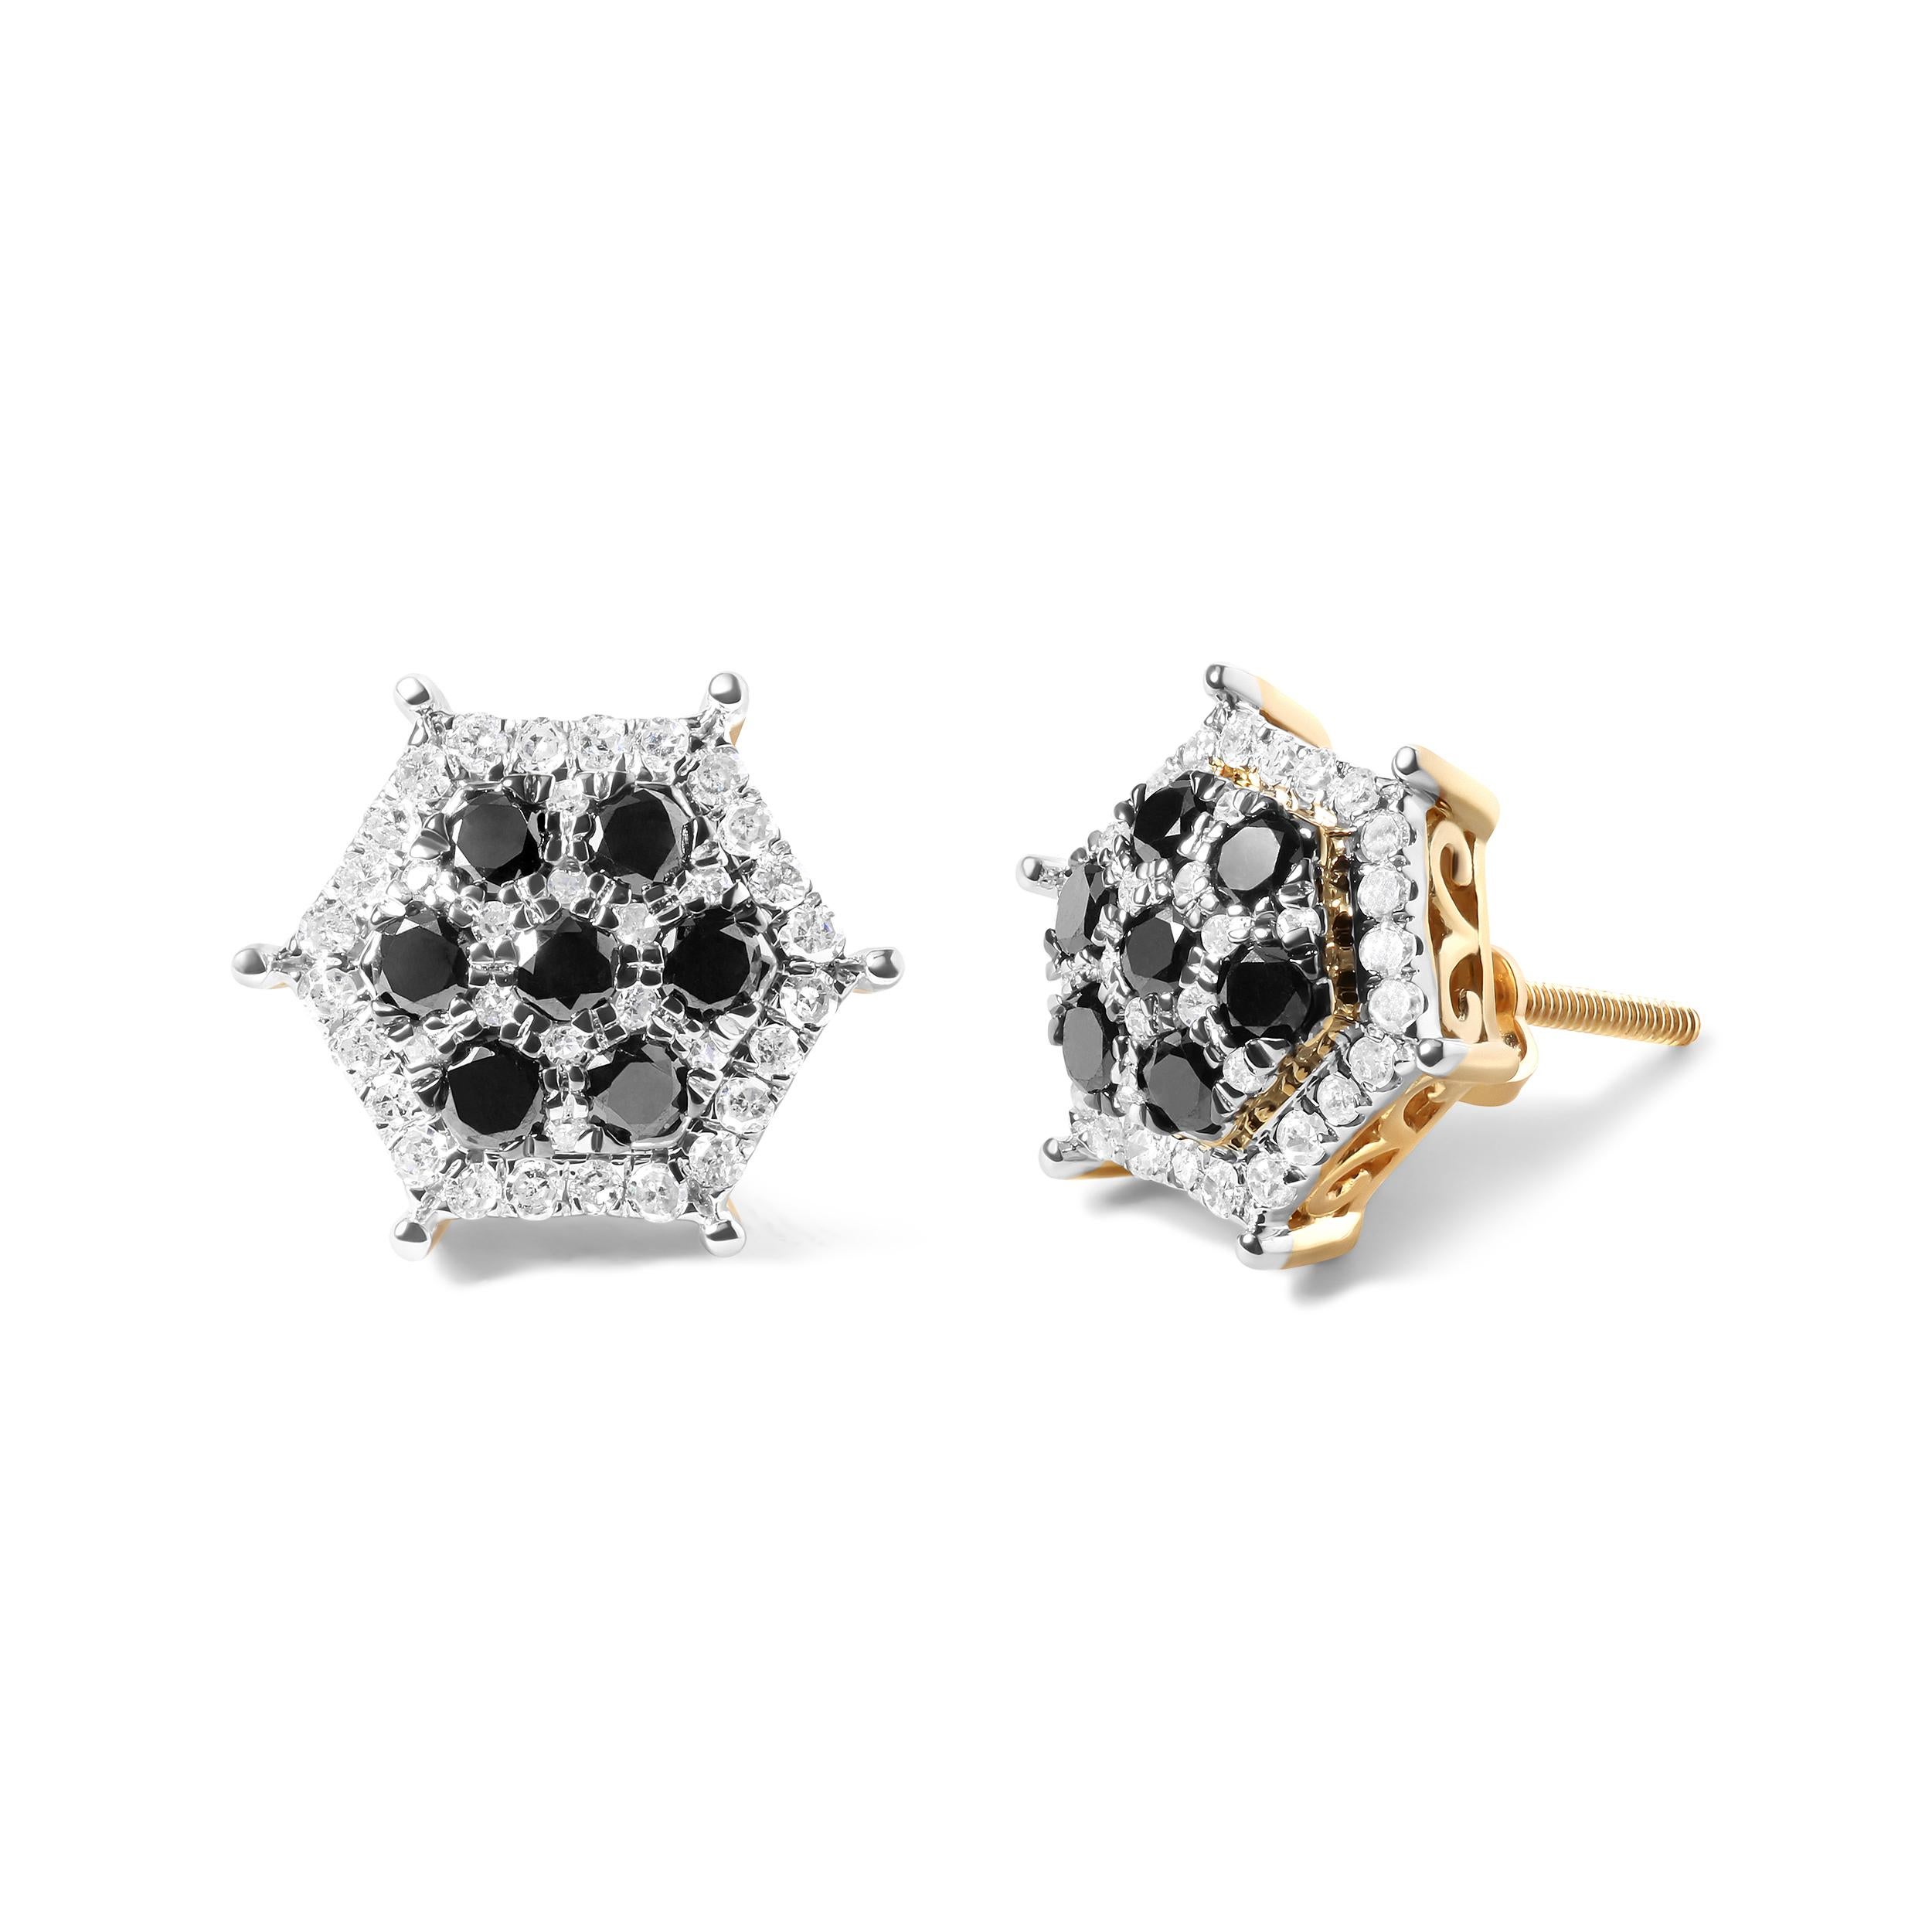 Genießen Sie den Luxus und die Eleganz dieser atemberaubenden Diamantohrringe, die aus feinstem 10-karätigem Gelbgold gefertigt sind. Diese Ohrringe sind das perfekte Accessoire für jeden stilvollen Mann. Sie bestehen aus insgesamt 86 funkelnden